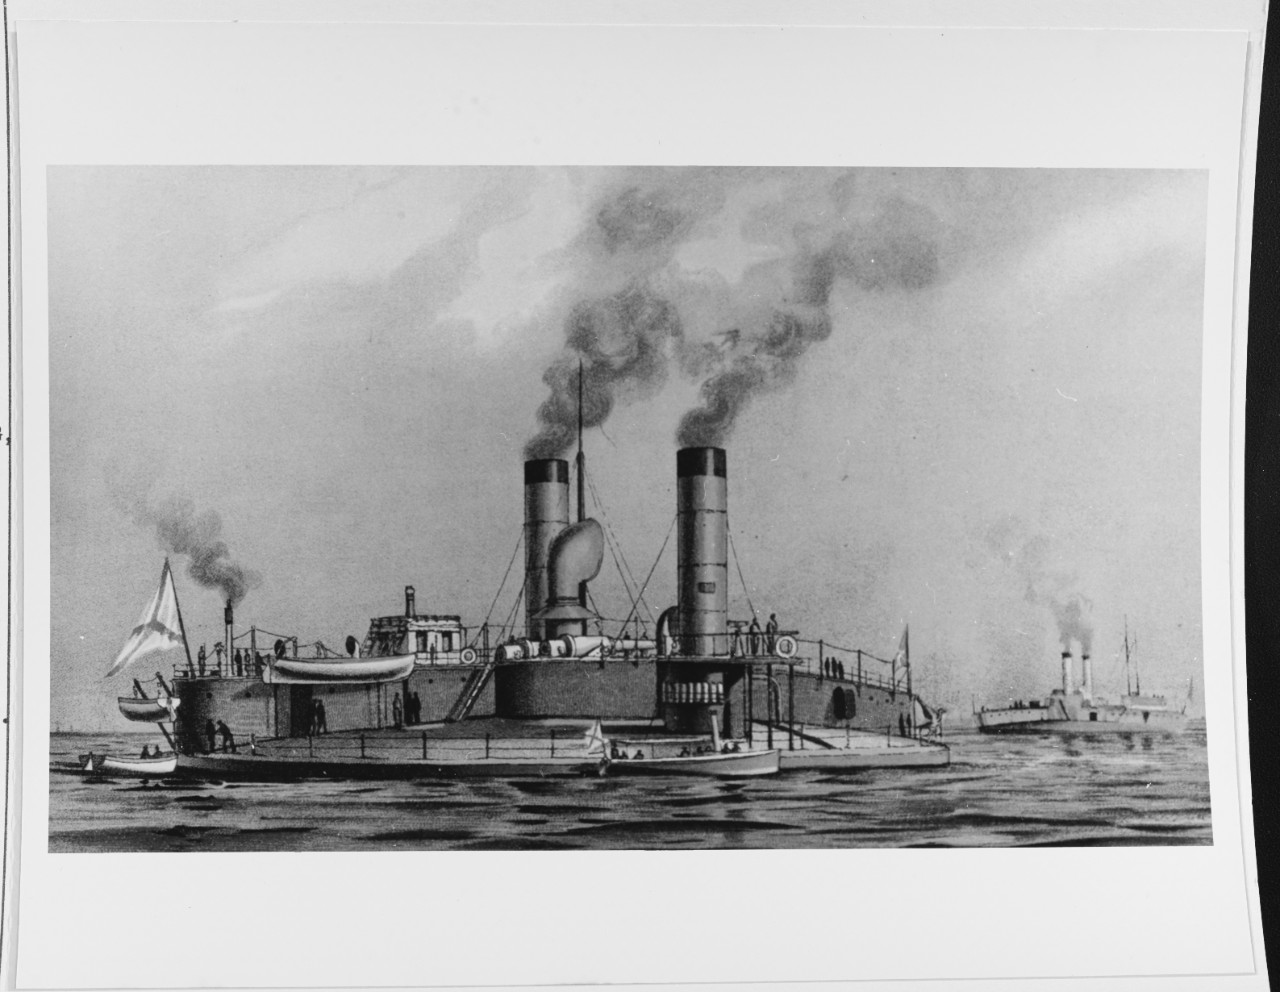 VICE ADMIRAL POPOFF (Russian coast-defense ship, 1875)